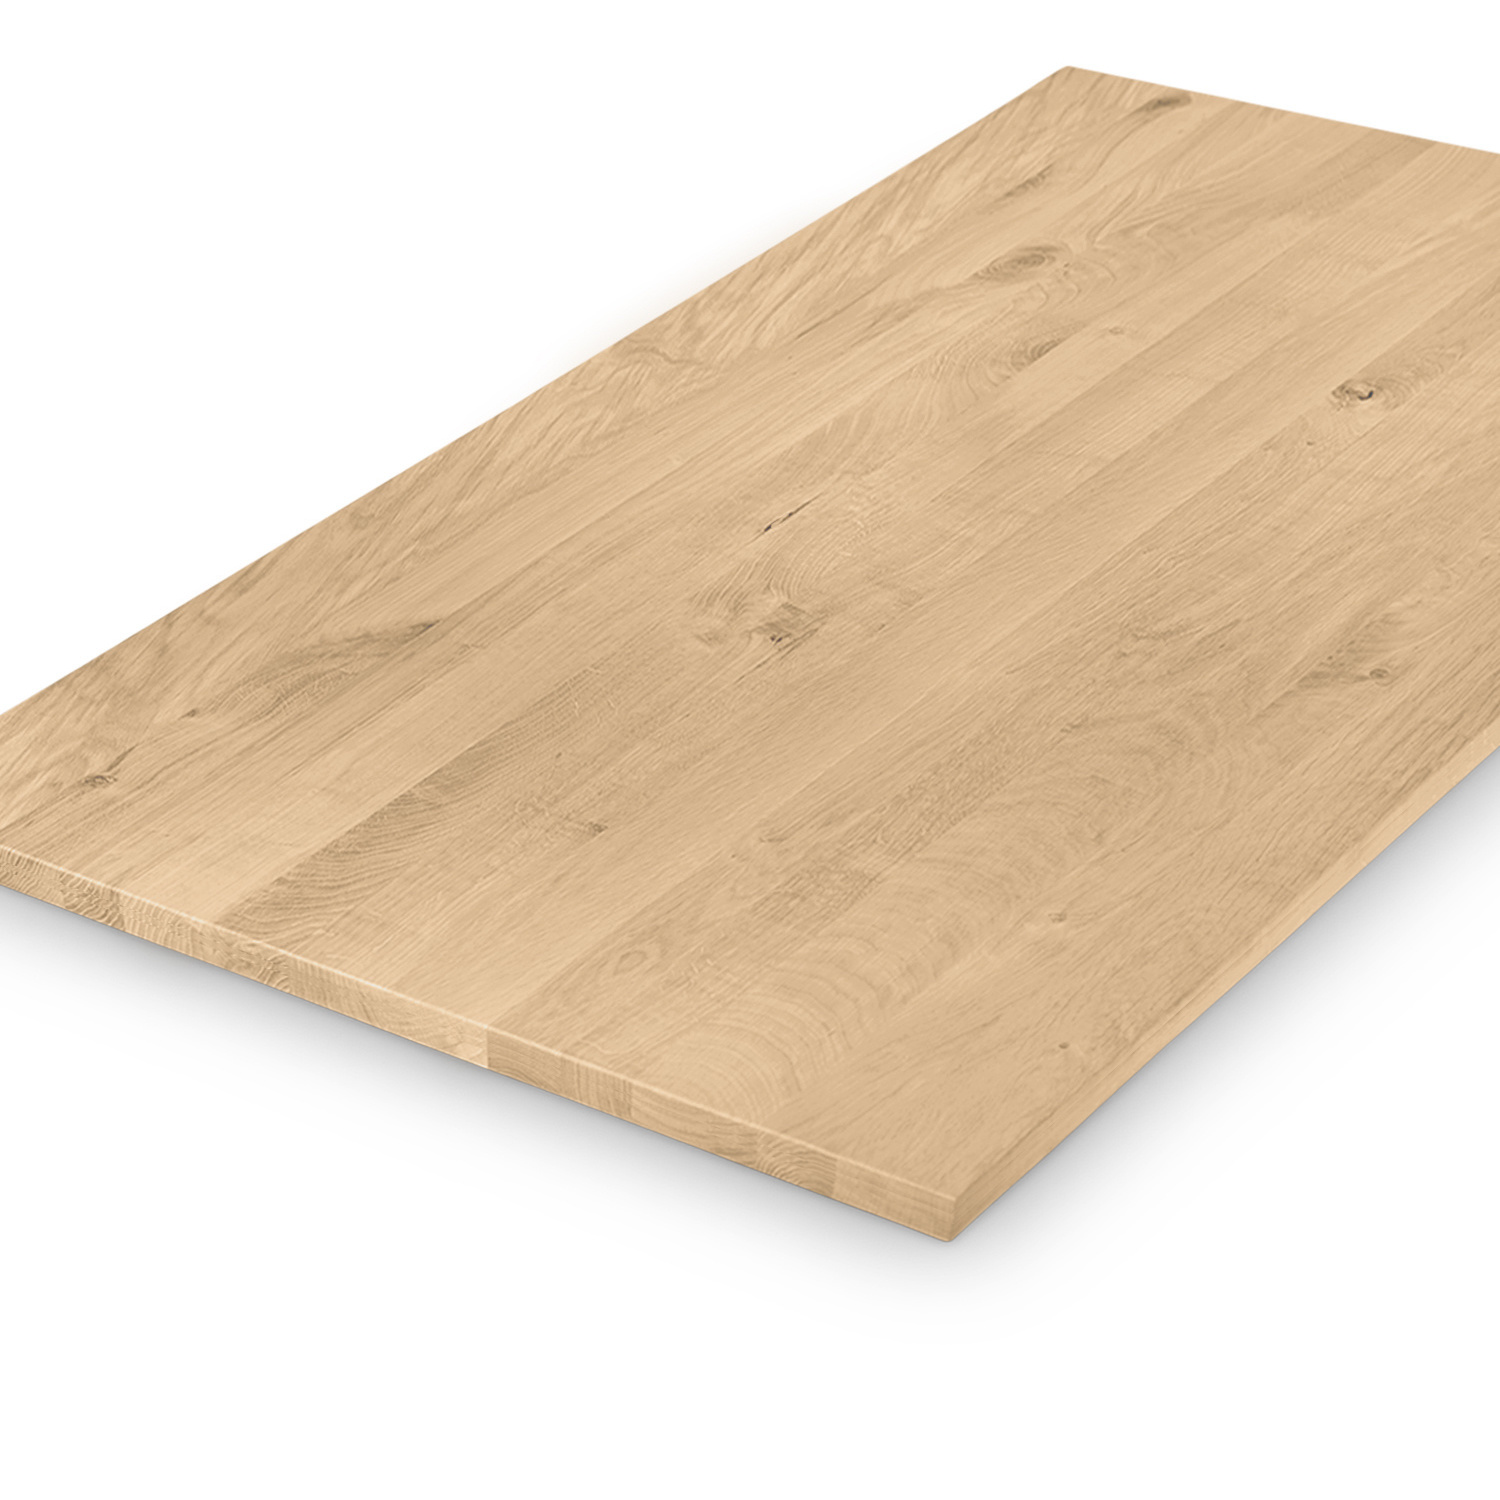  Eiken tafelblad op maat - 2,3 cm dik (1-laag) - rustiek Europees eikenhout - verlijmd kd 8-12% - 50-120x50-350 cm